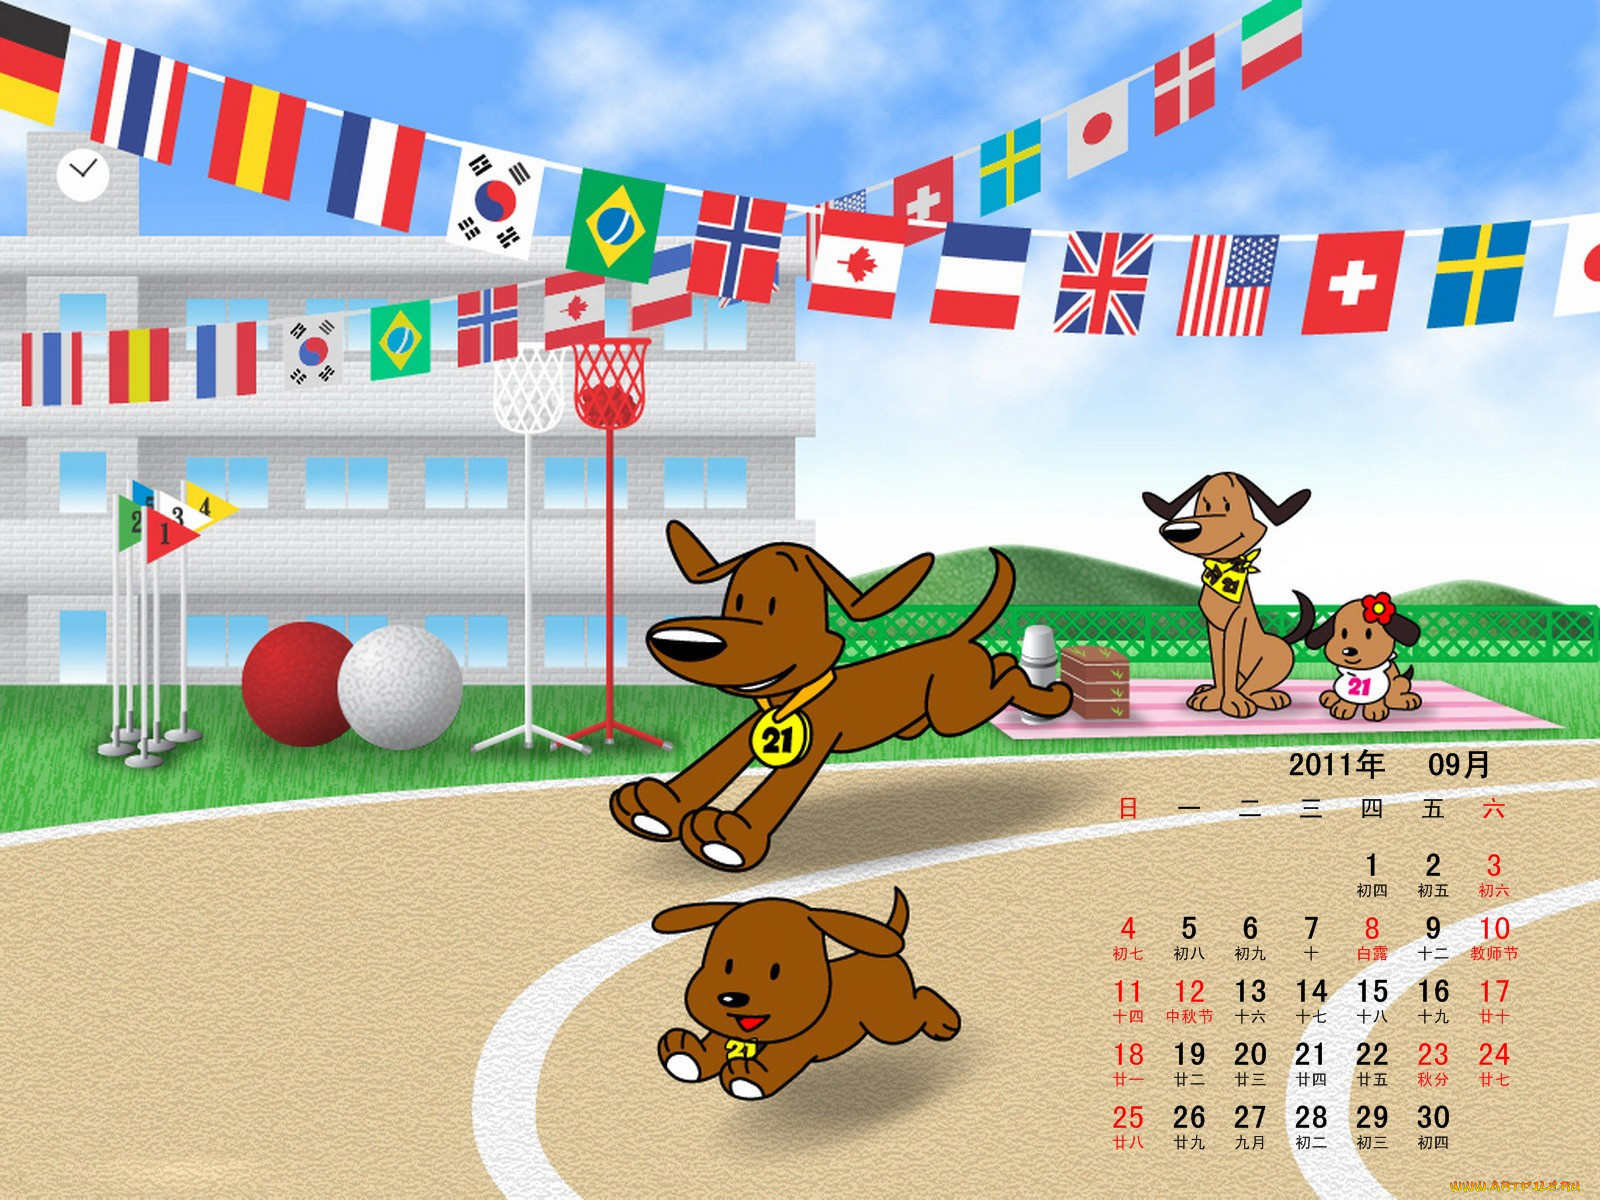 календари, рисованные, векторная, графика, собаки, корова, бег, мячи, флаги